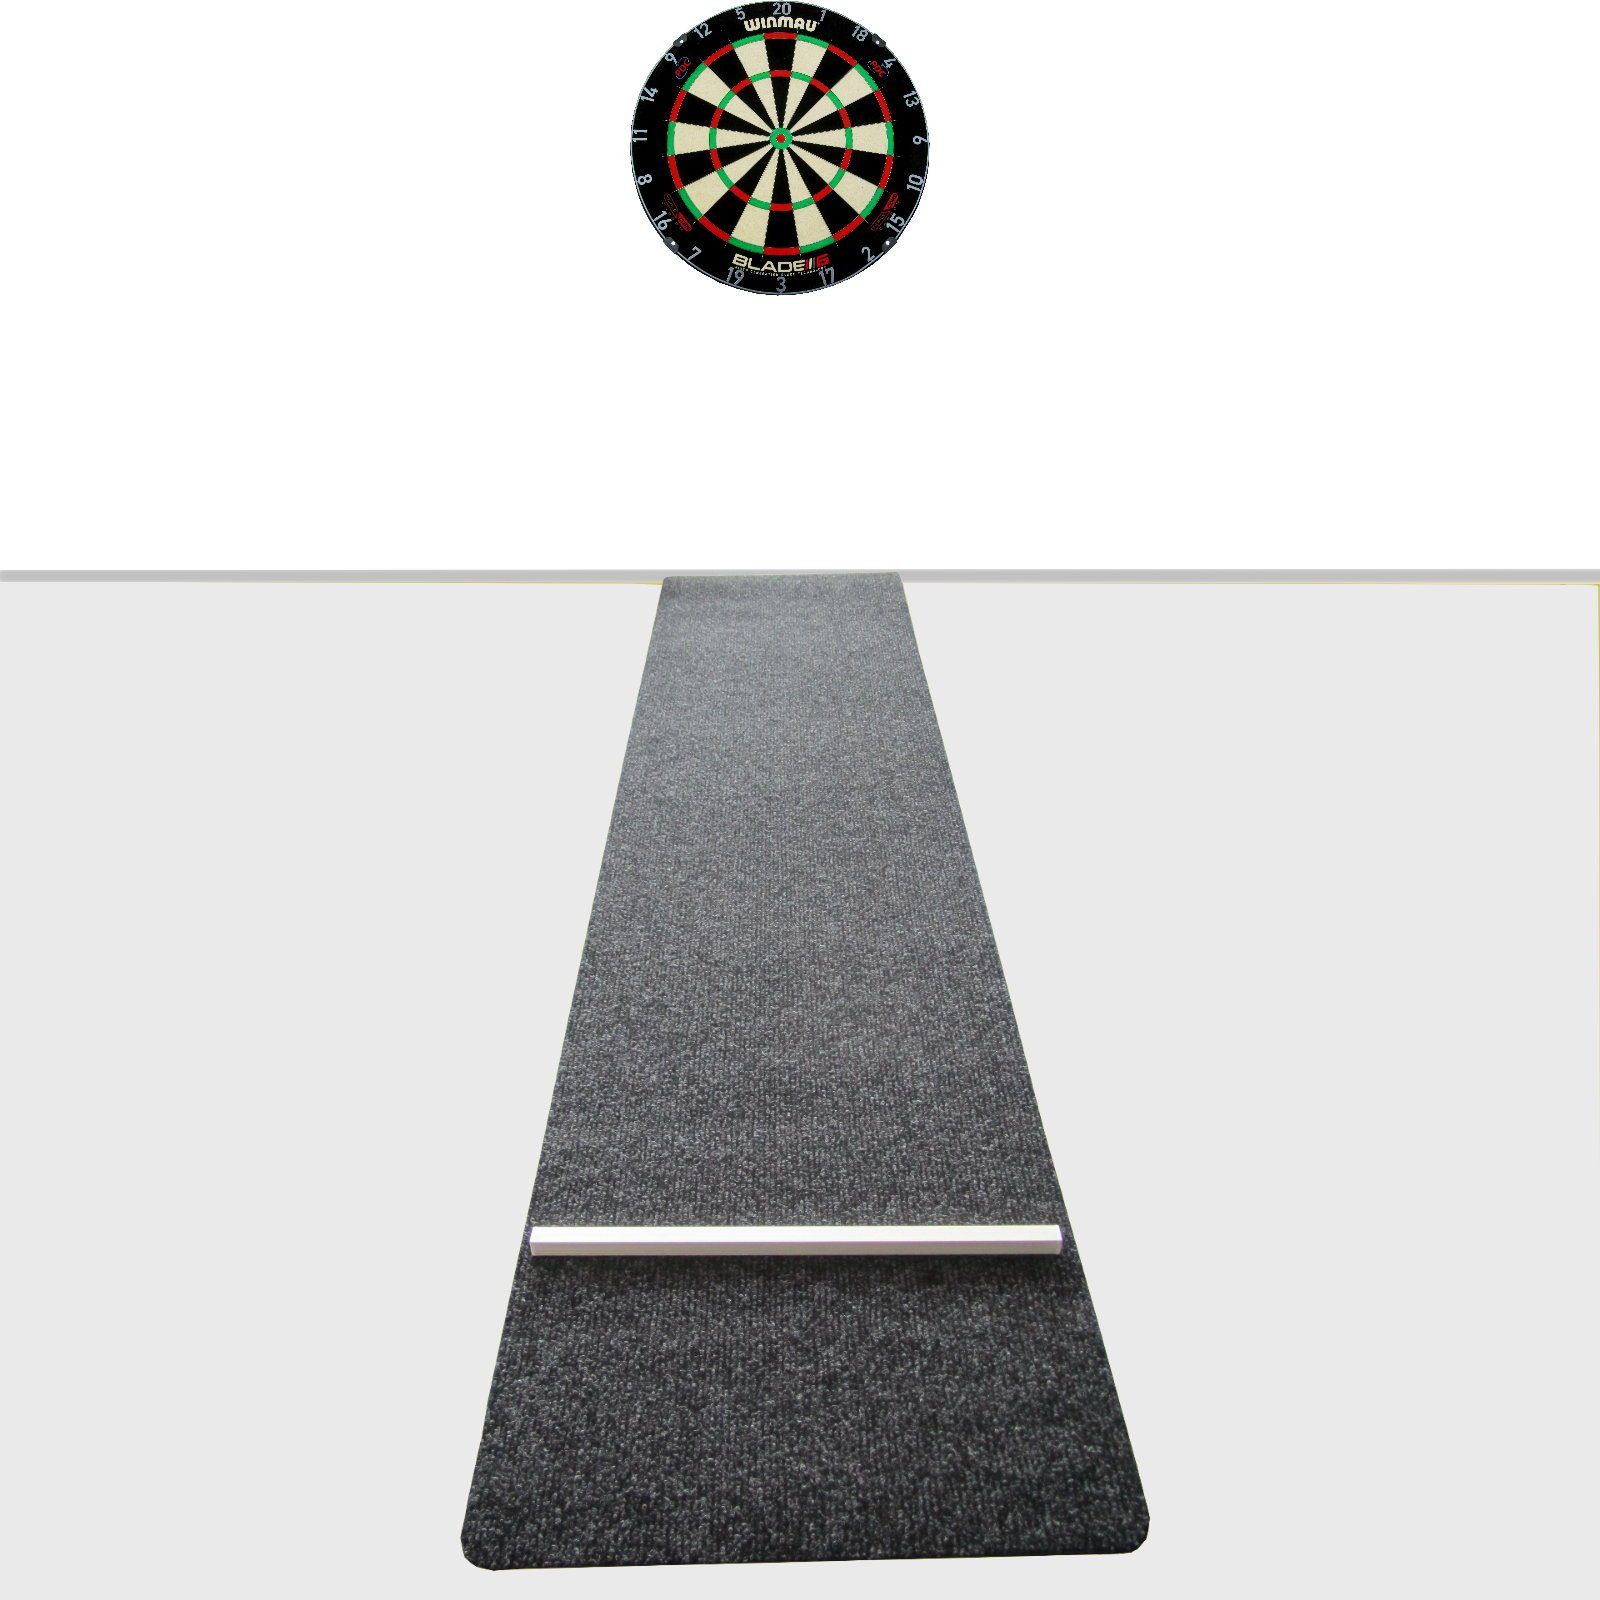 DSX Dartscheibe »Dartboard Winmau Blade 6 Triple Core Carbon + Dartteppich  Matte Abwurflinie Oche« online kaufen | OTTO